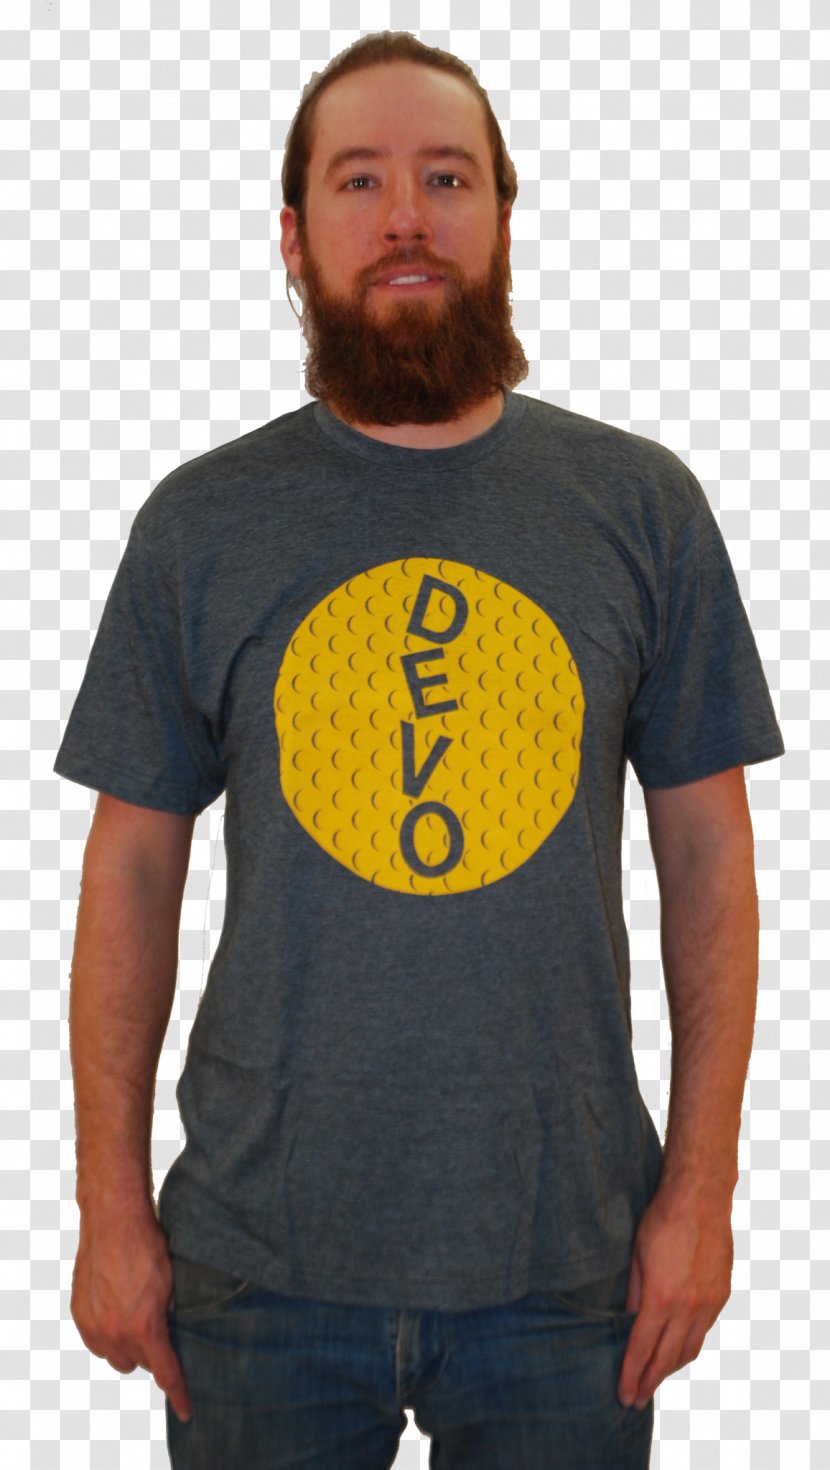 T-shirt Beard Sleeve Outerwear - T Shirt - Golf Tee Transparent PNG